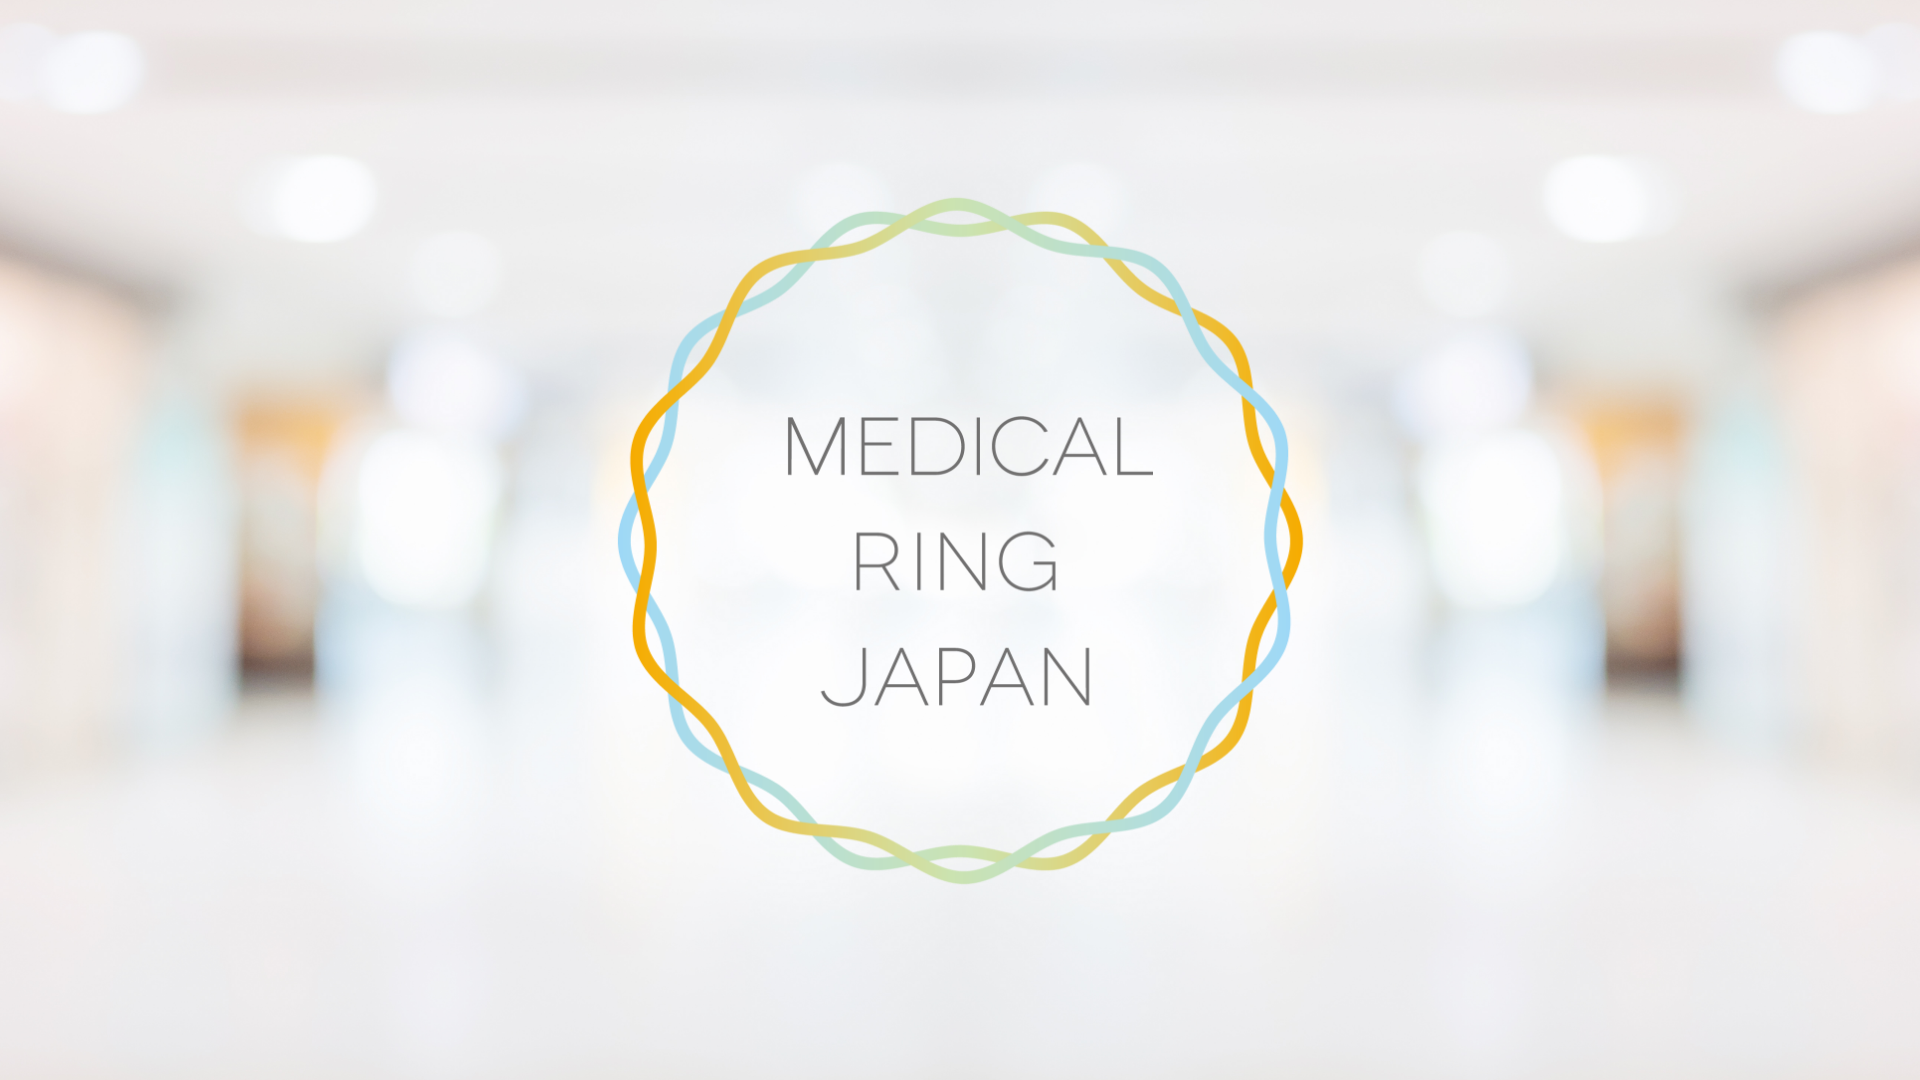 MEDICAL RING JAPAN